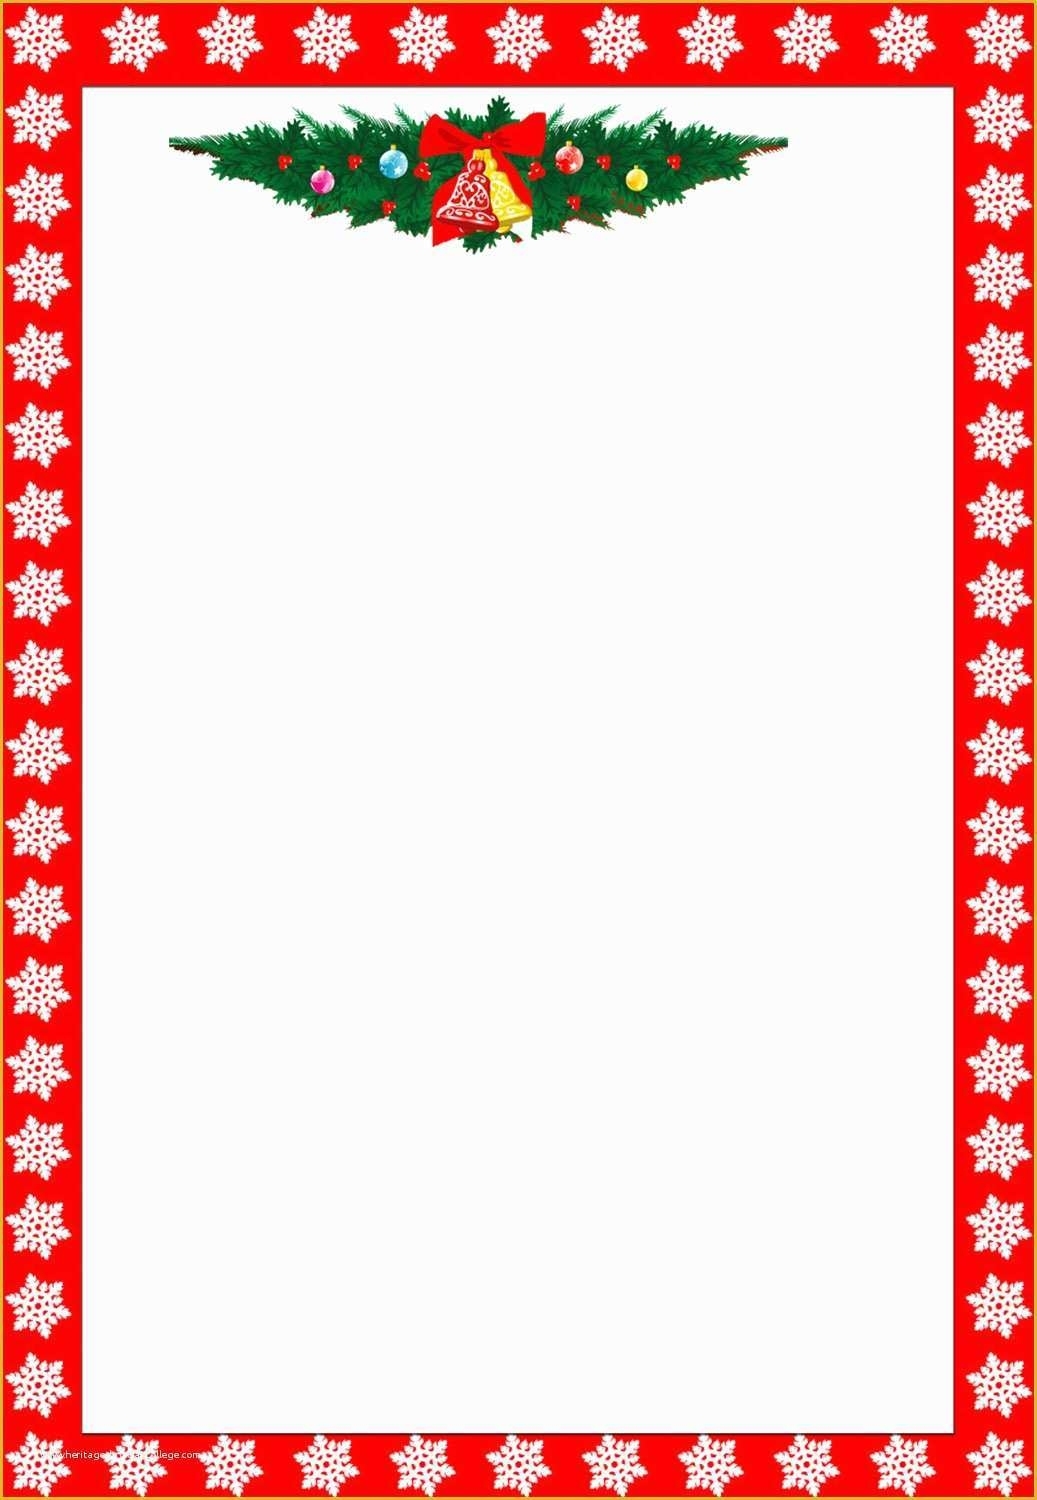 Free Christmas Border Templates Of 13 Christmas Paper Templates Free in Christmas Border Word Template